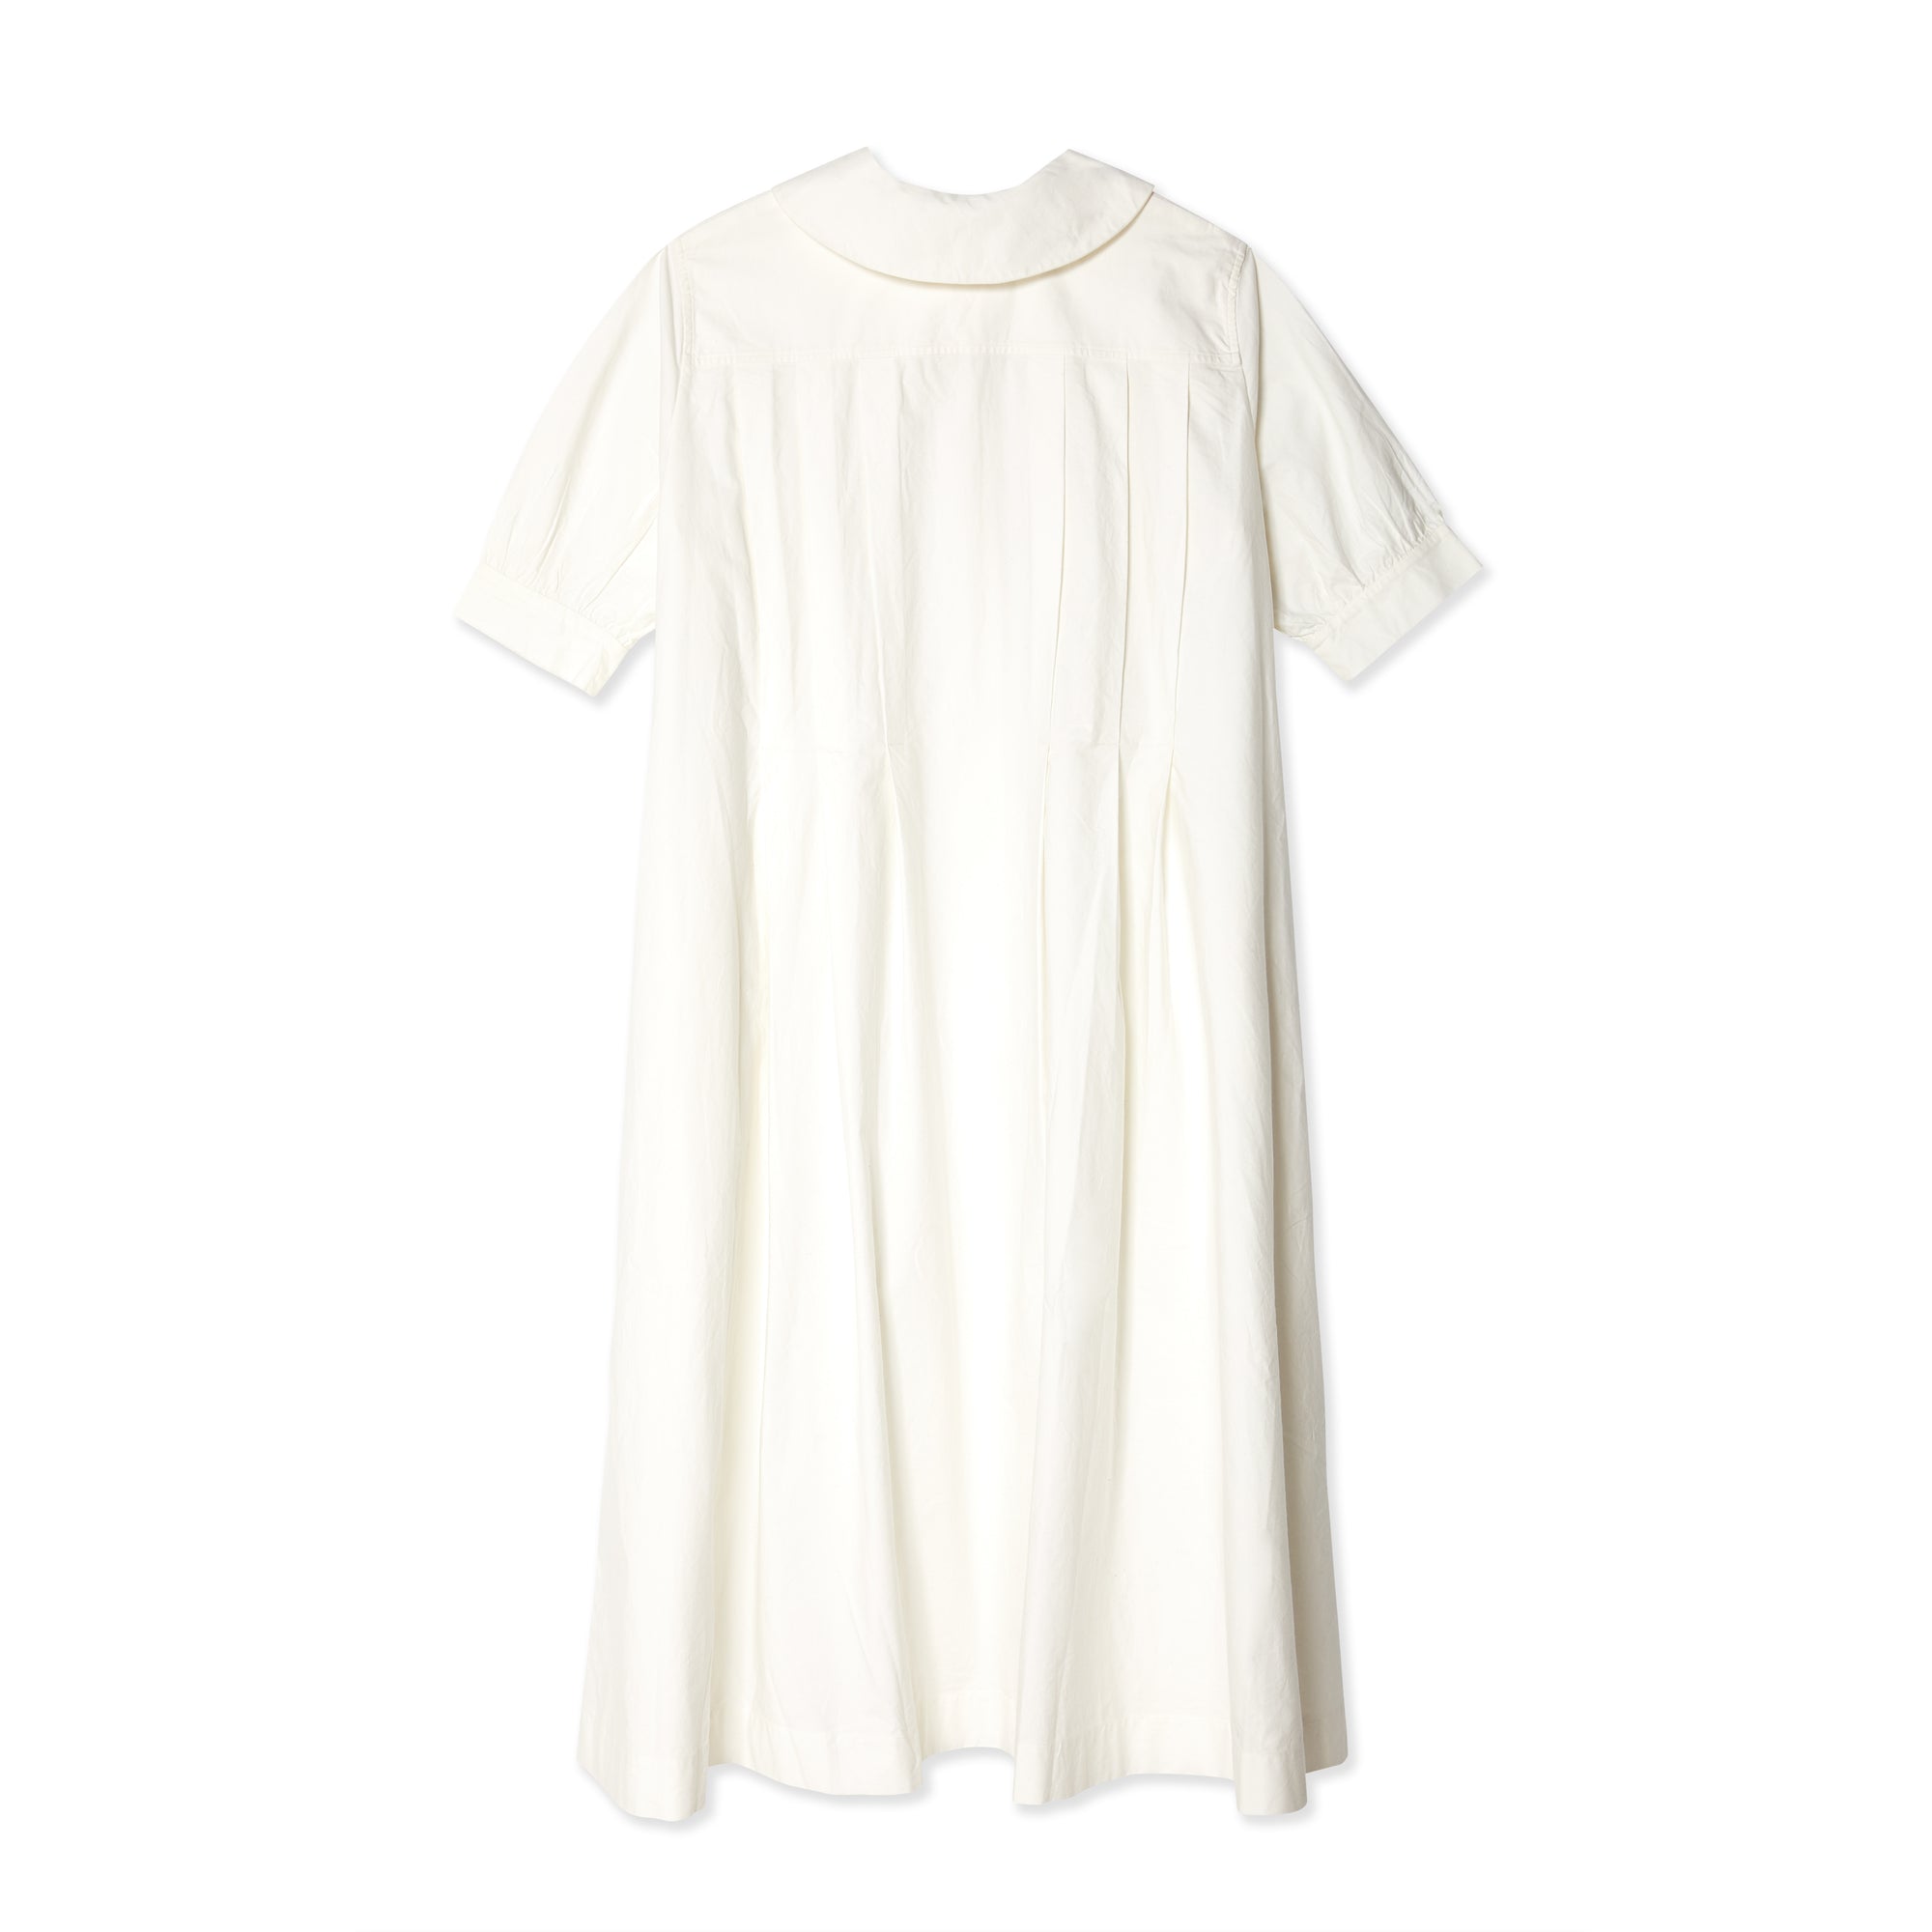 Egg Trading - Women's Dress - (White) view 2